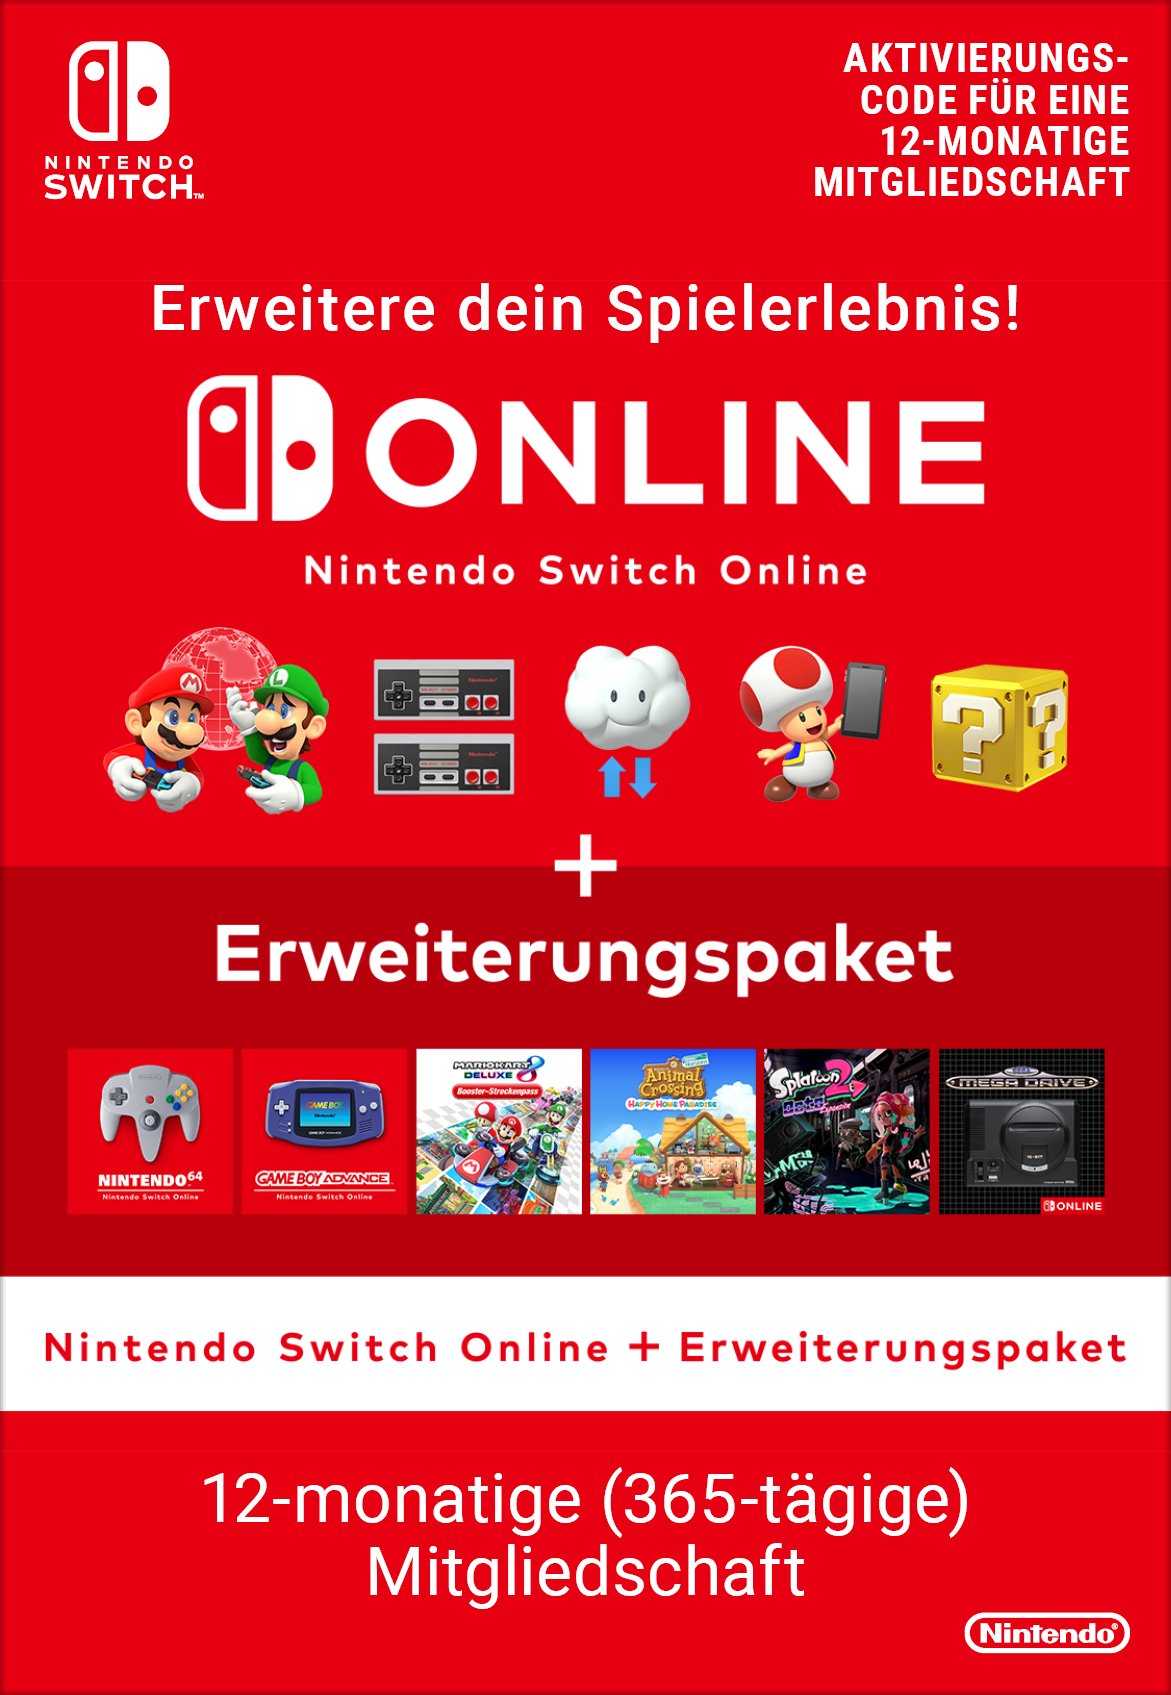 Nintendo Switch Online + Erweiterungspaket Gamecardsdirect | Tage 365